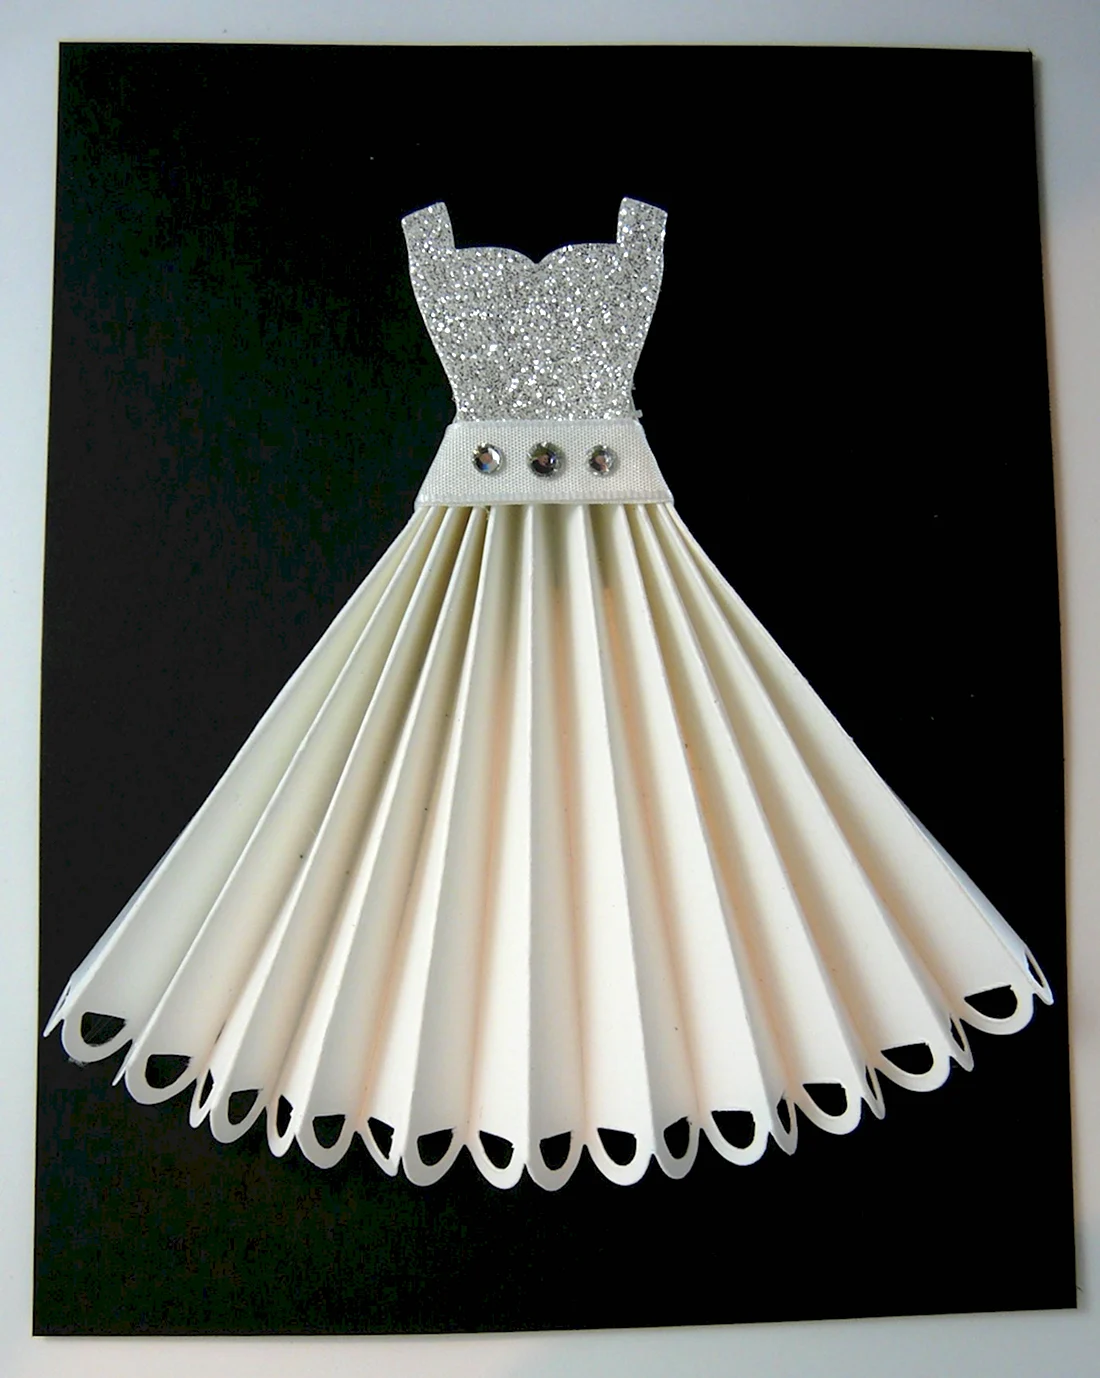 Бумажное платье на открытку открытка